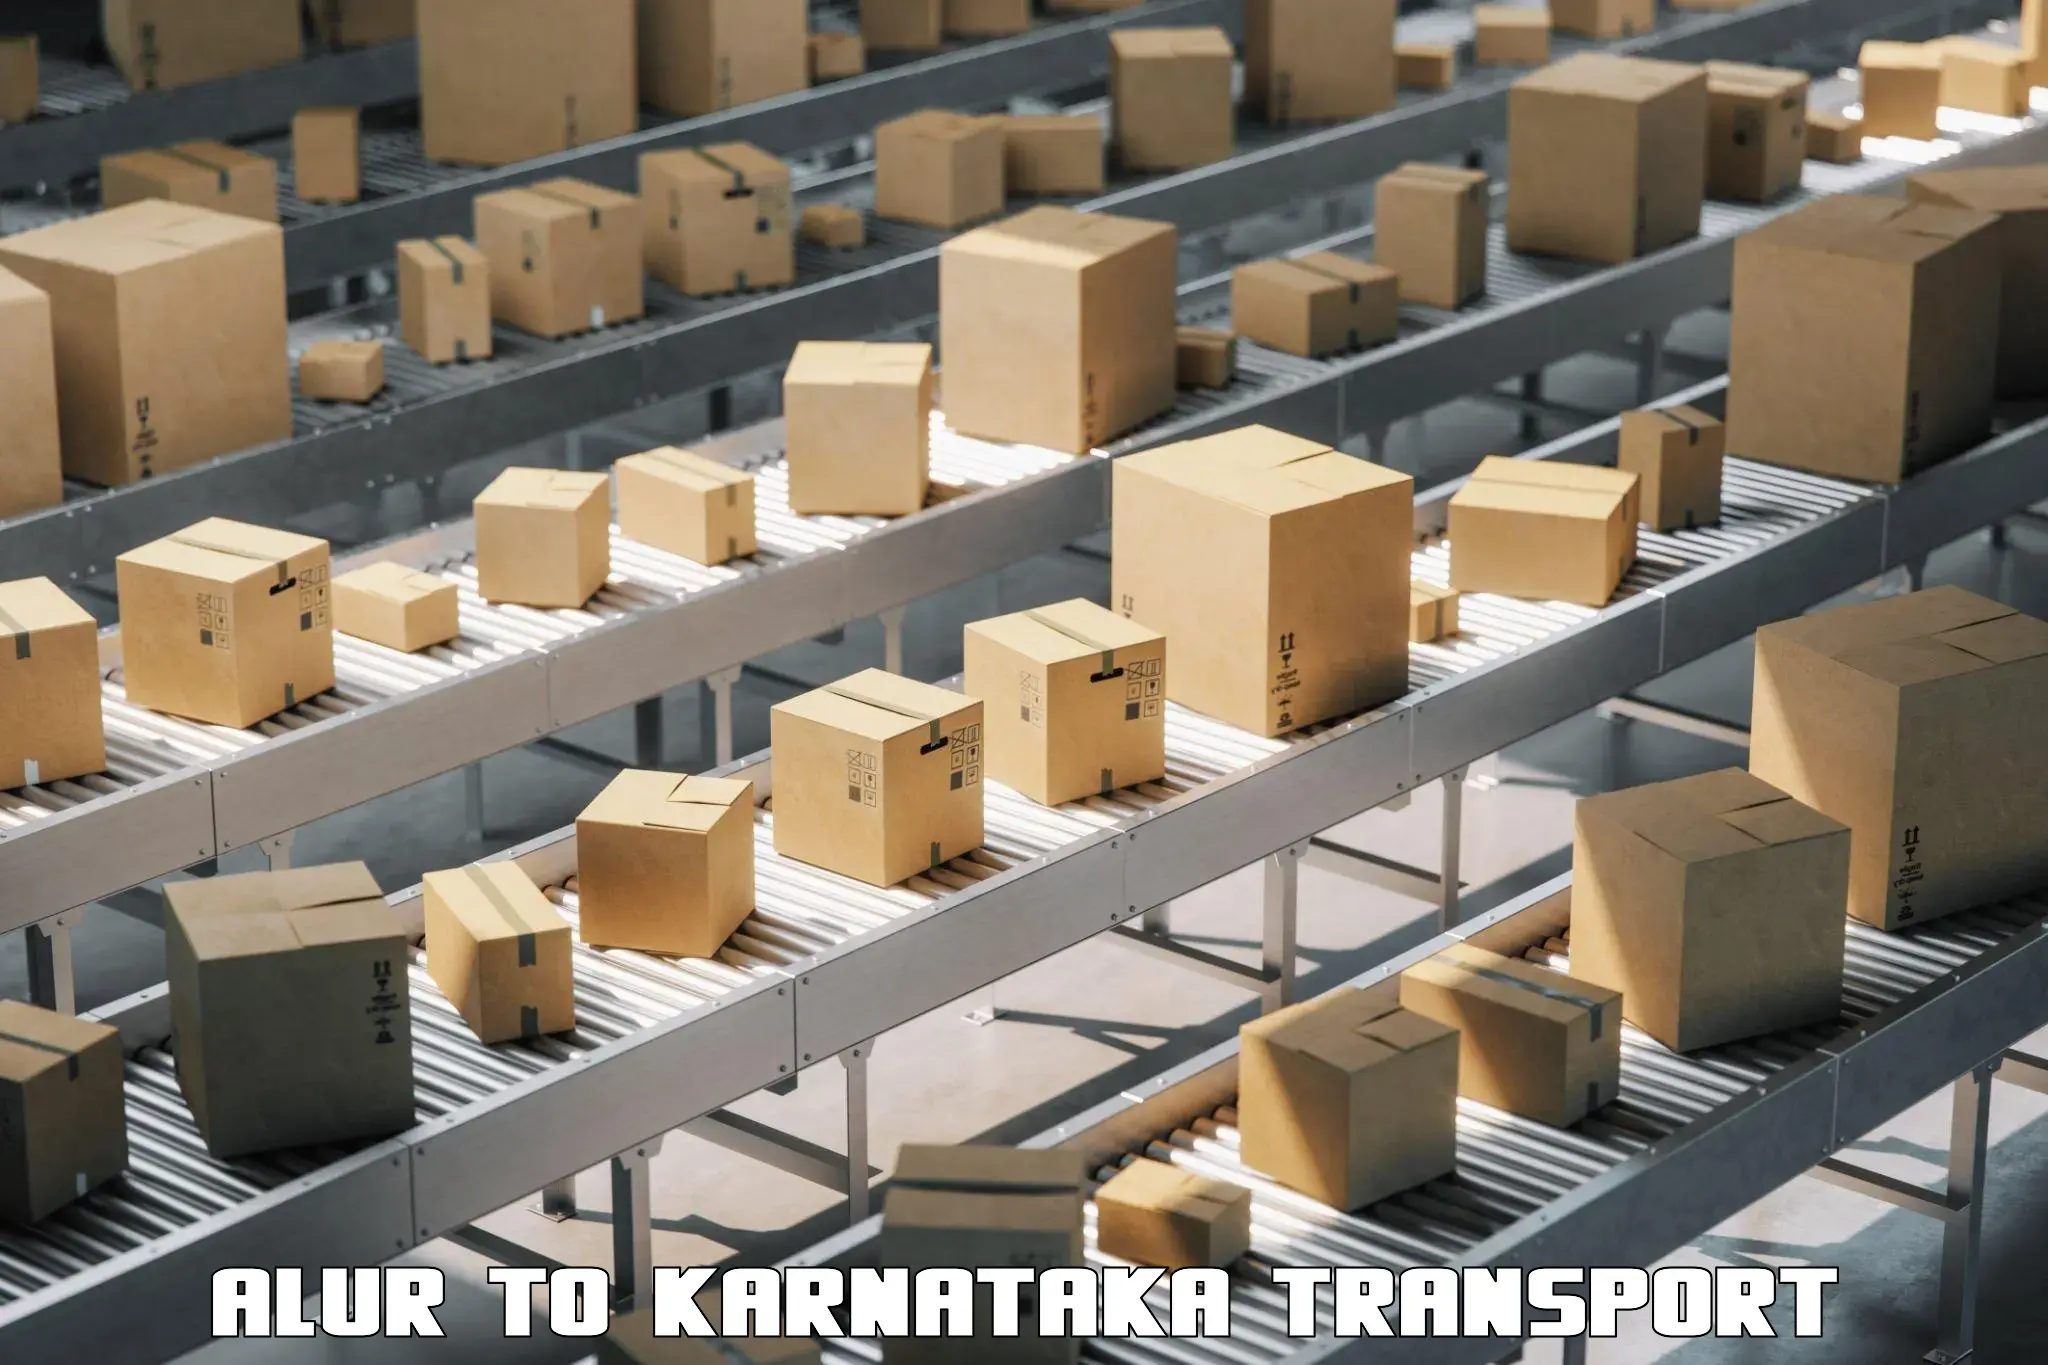 Container transportation services Alur to Ukkadagatri